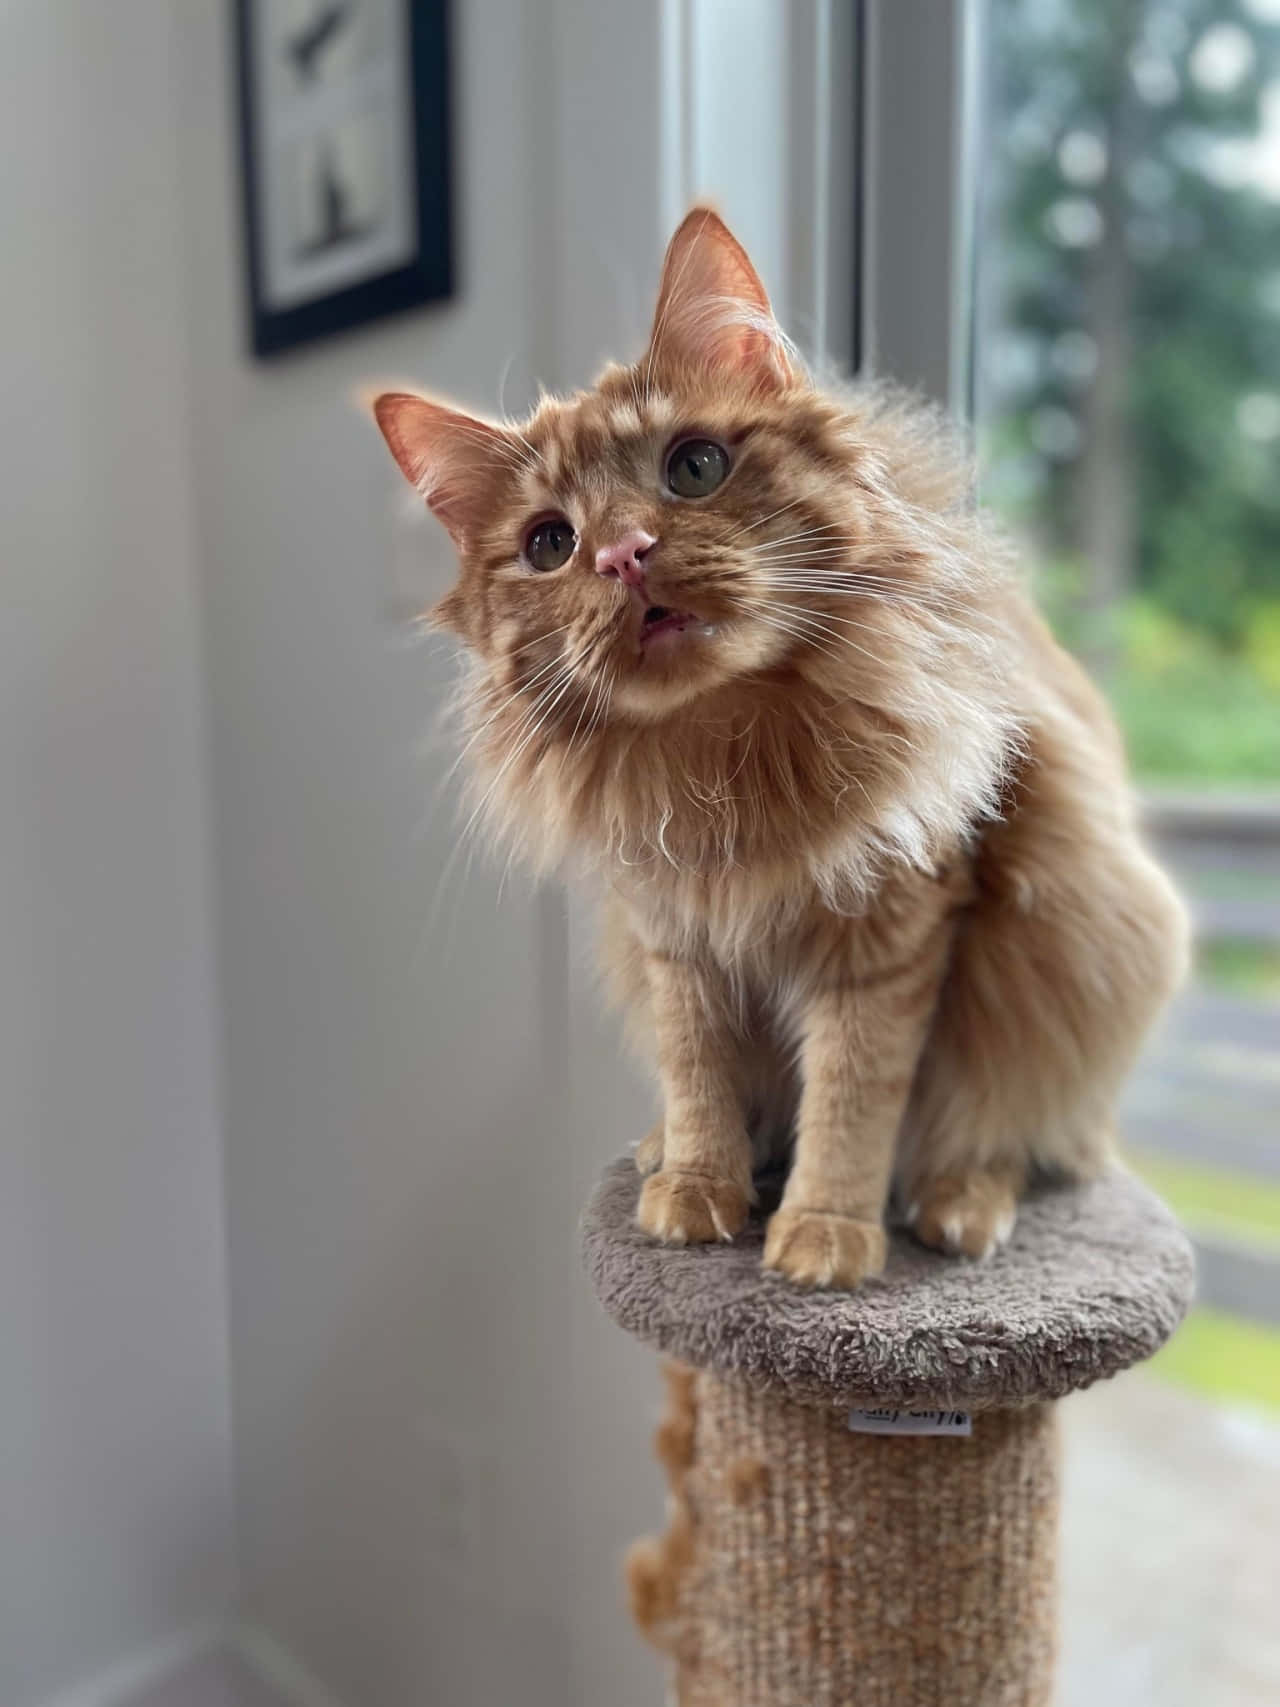 Lustigekatzen-memes: Bild Einer Orangefarbenen Katze Auf Einem Kratzbaum